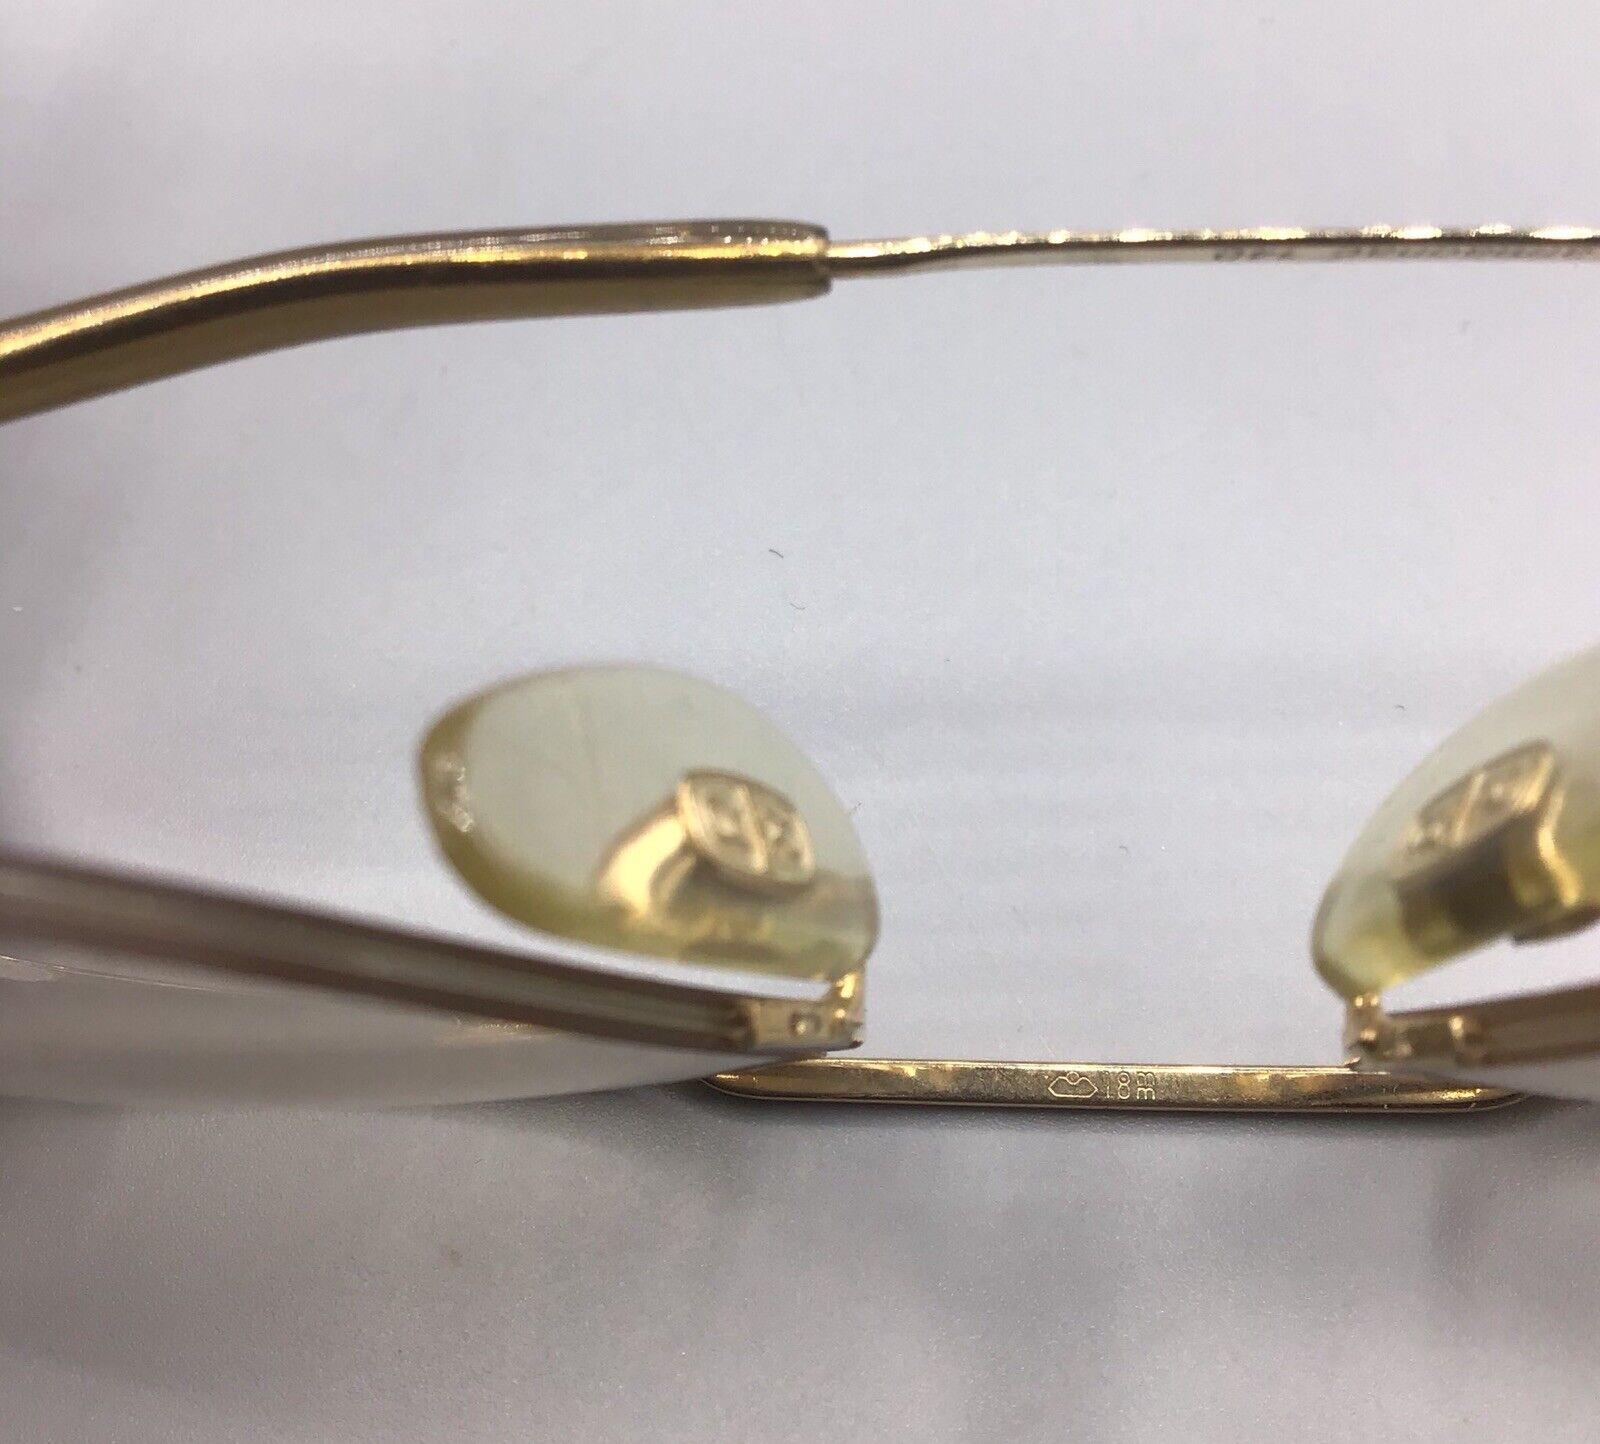 Rodenstock mar850b 18m occhiale vintage eyewear brillen frame oro gold